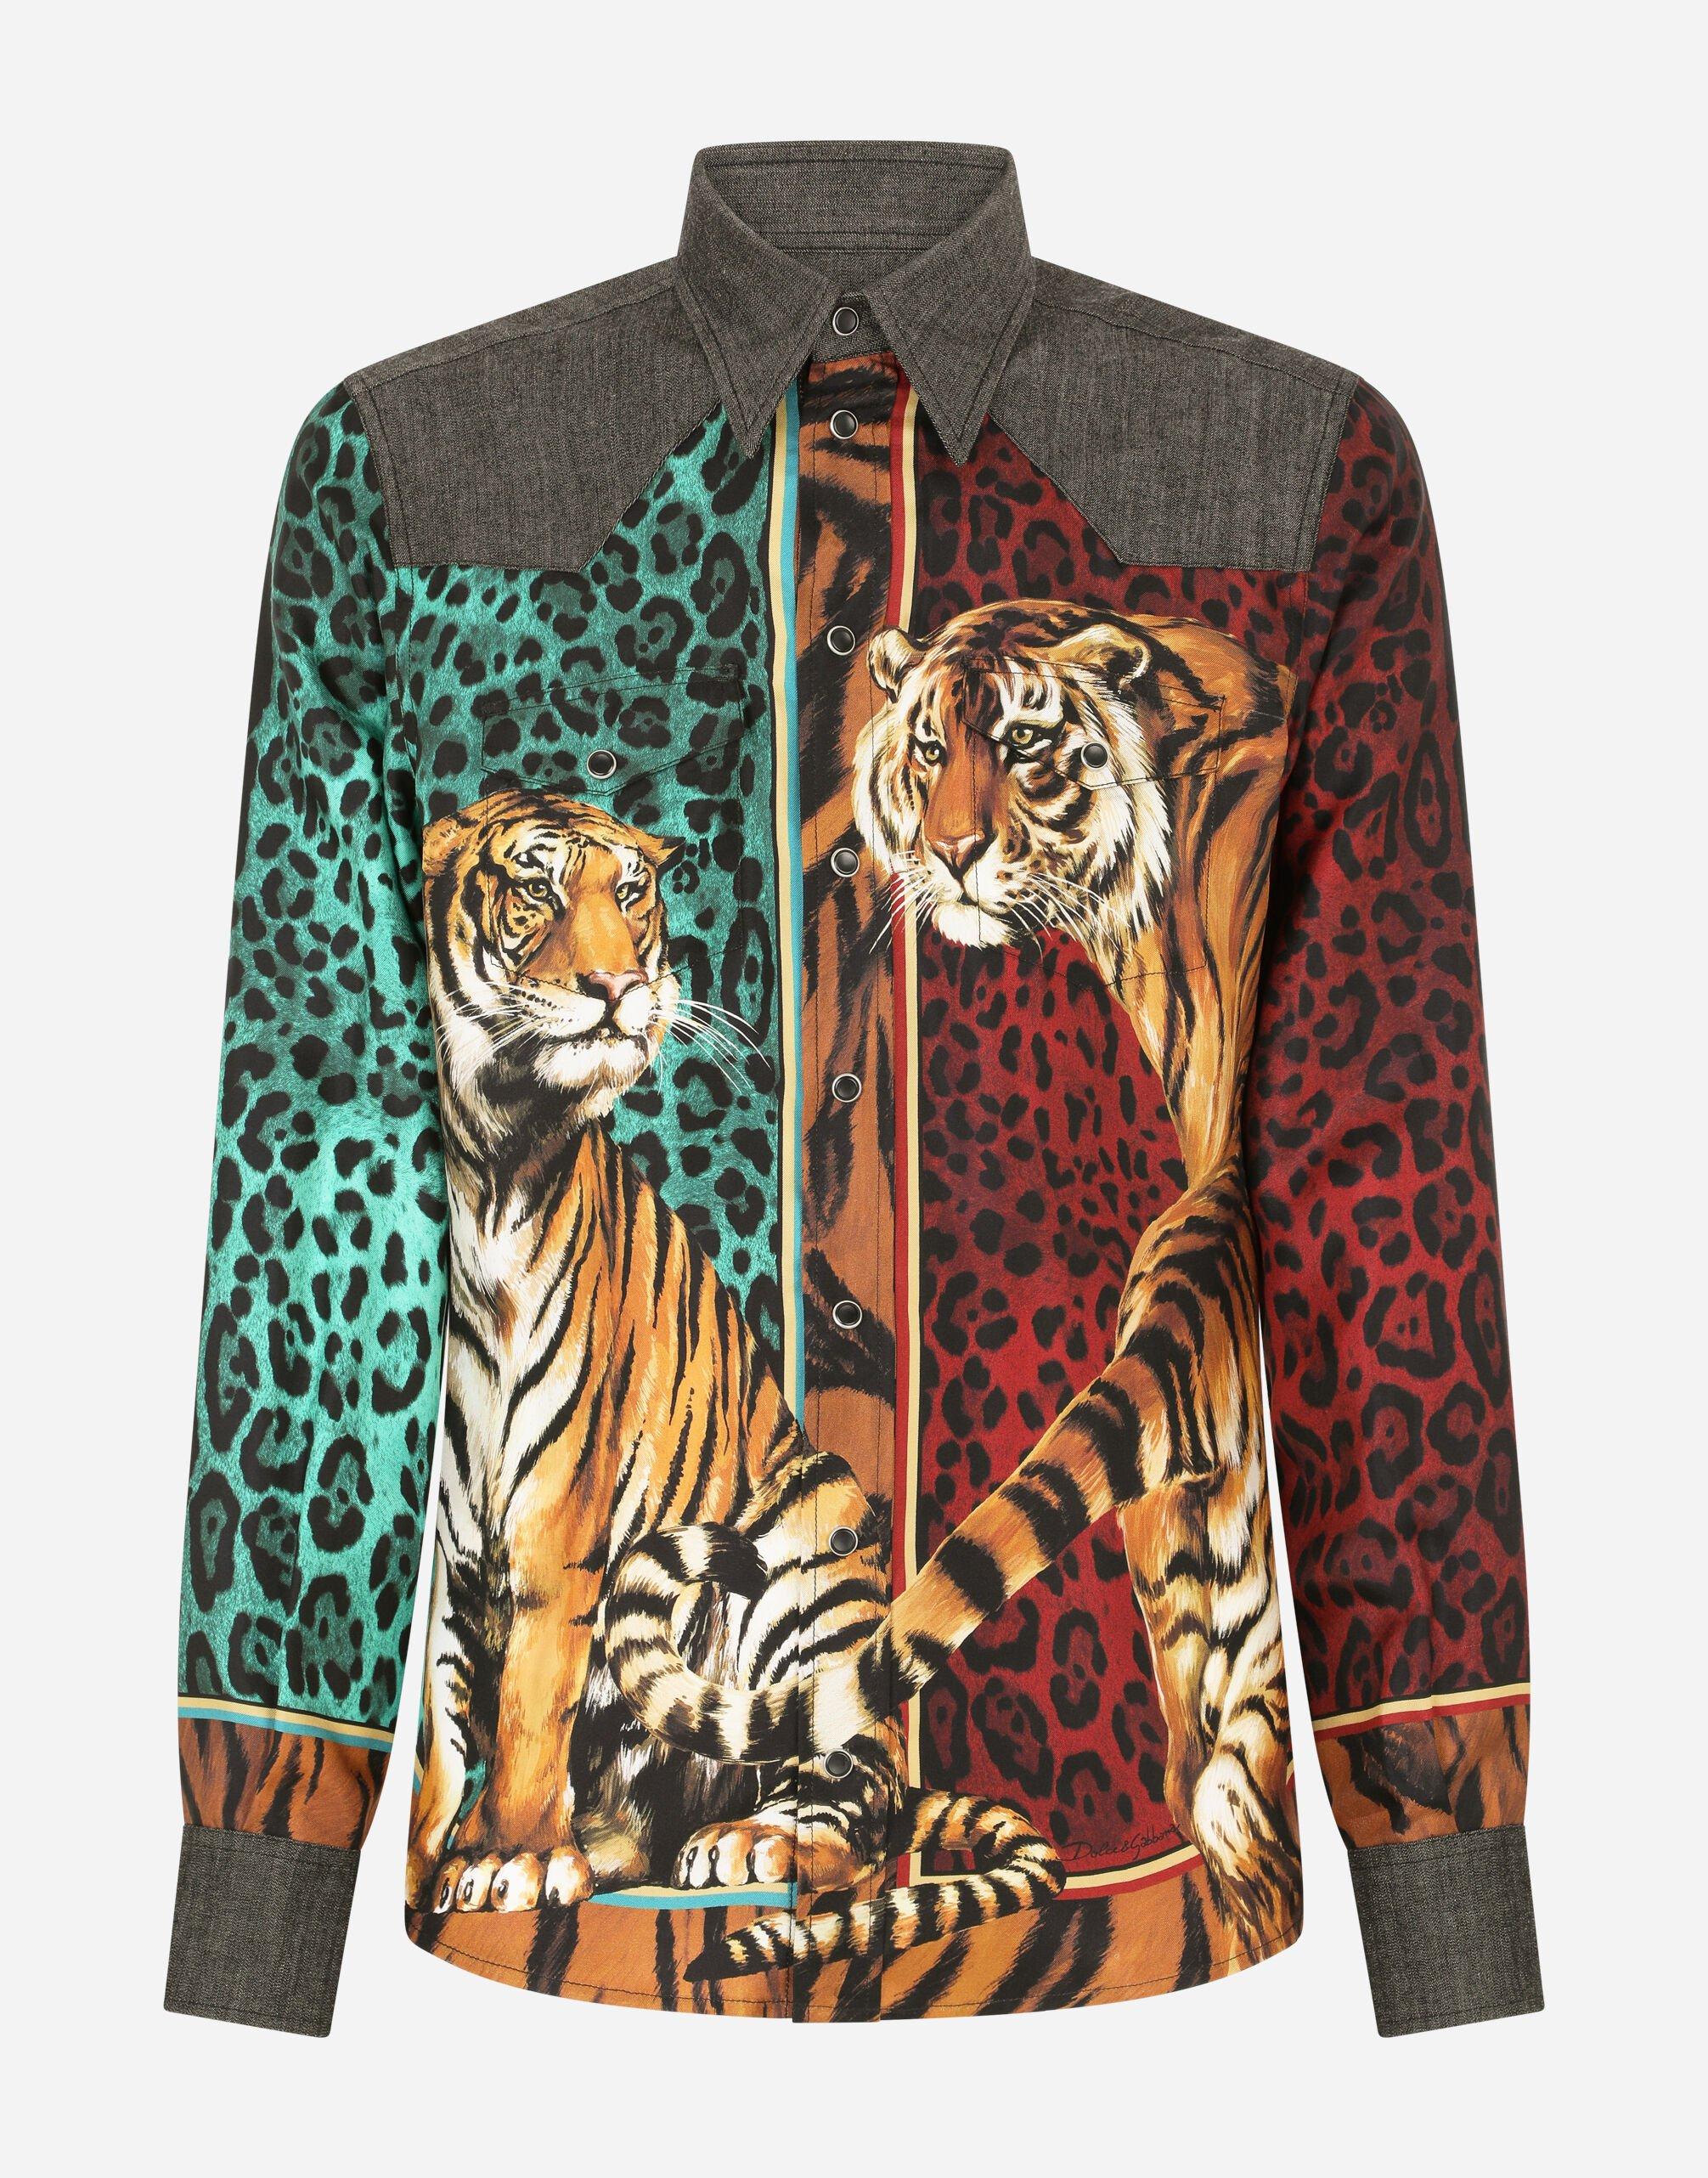 Dolce & Gabbana Men's Martini Tiger Jacquard Silk Shirt - Green - Casual Shirts